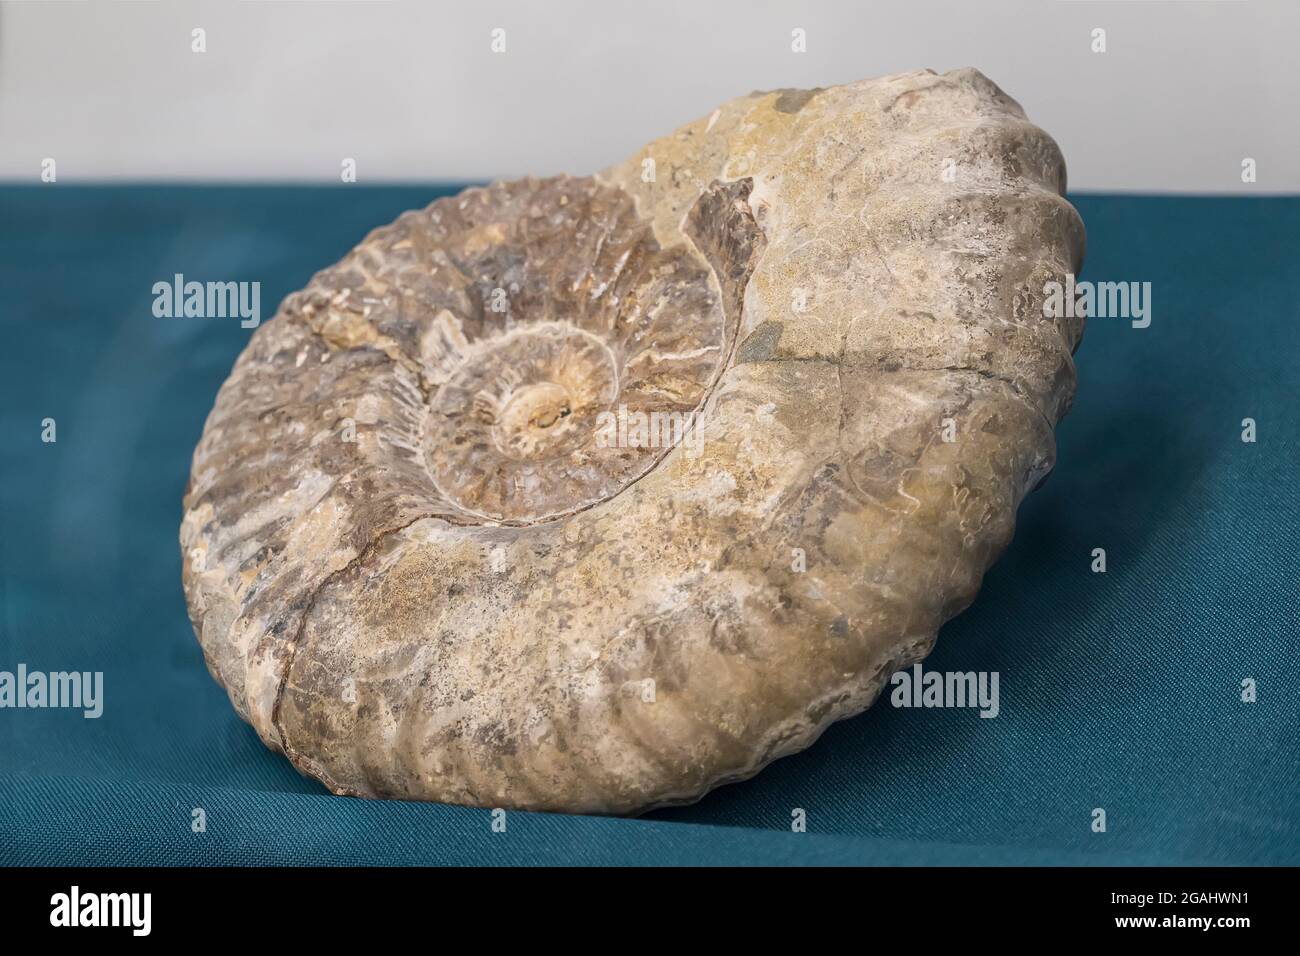 Uralte prähistorische Fossilien. Ein archäologischer Fund. Die ersten Lebewesen auf dem Planeten Erde. Die ersten uralten primitiven Tiere Stockfoto